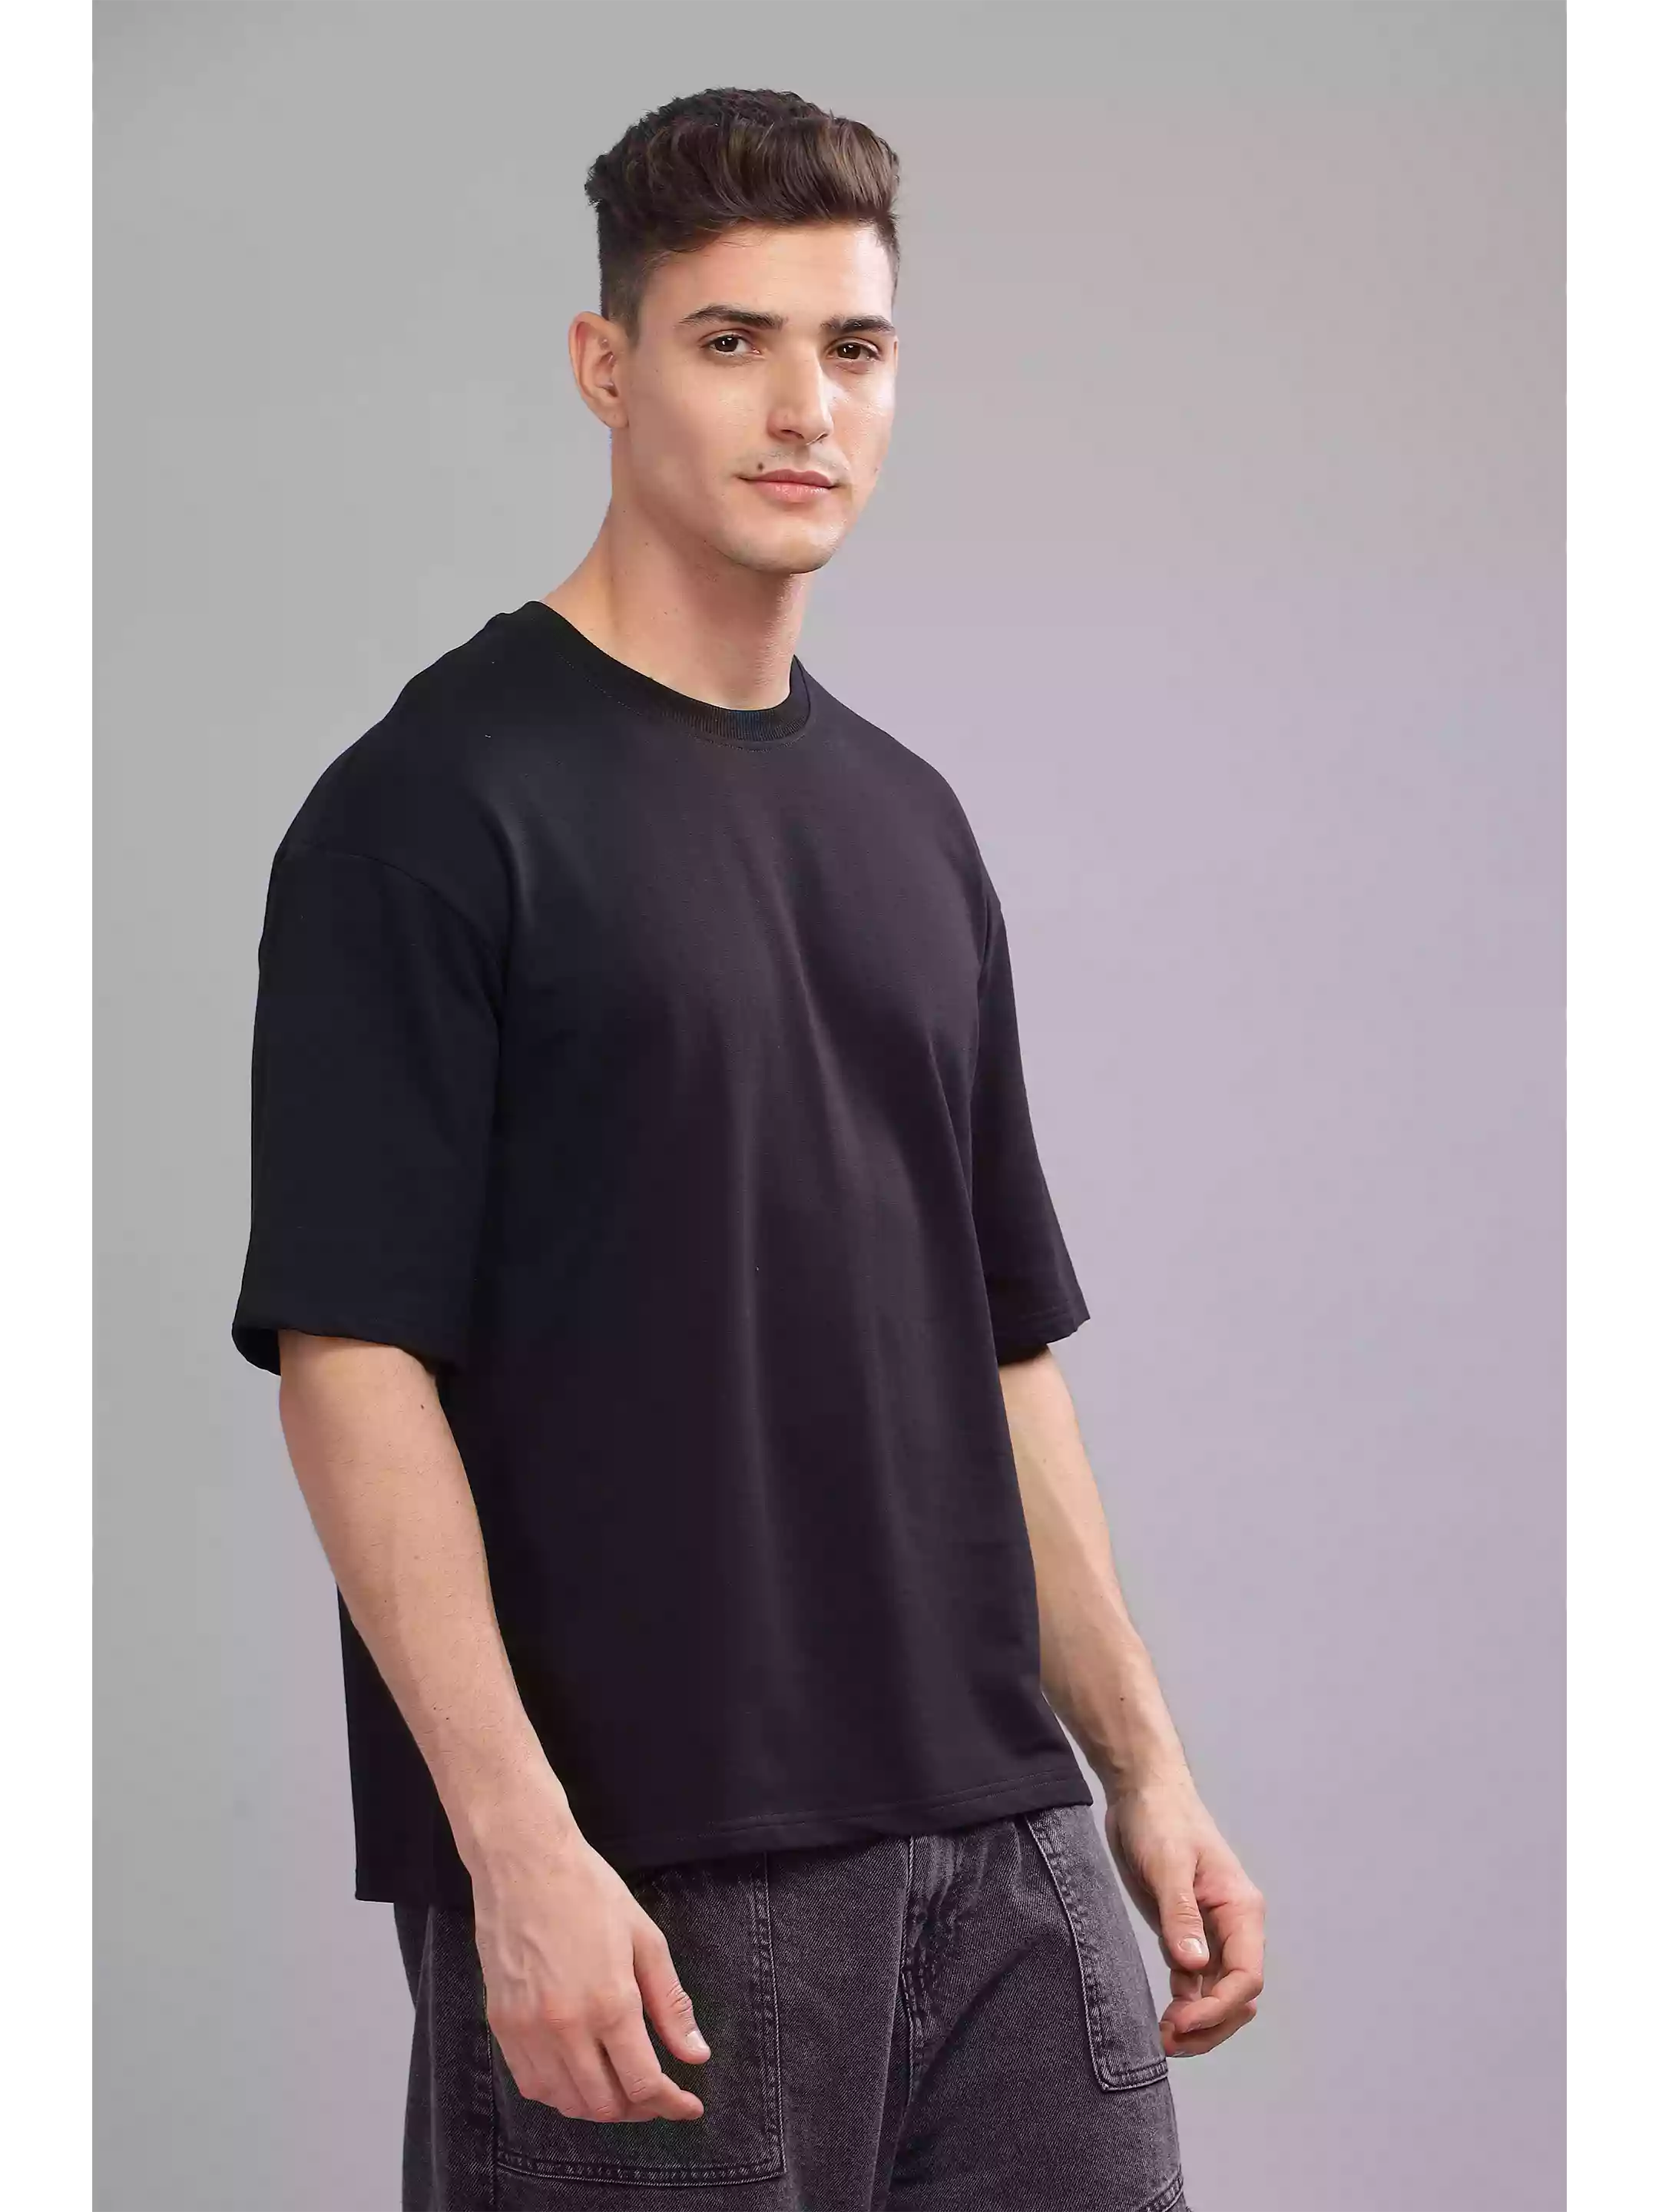 Solid Black Over sized - Sukhiaatma Unisex T-shirt